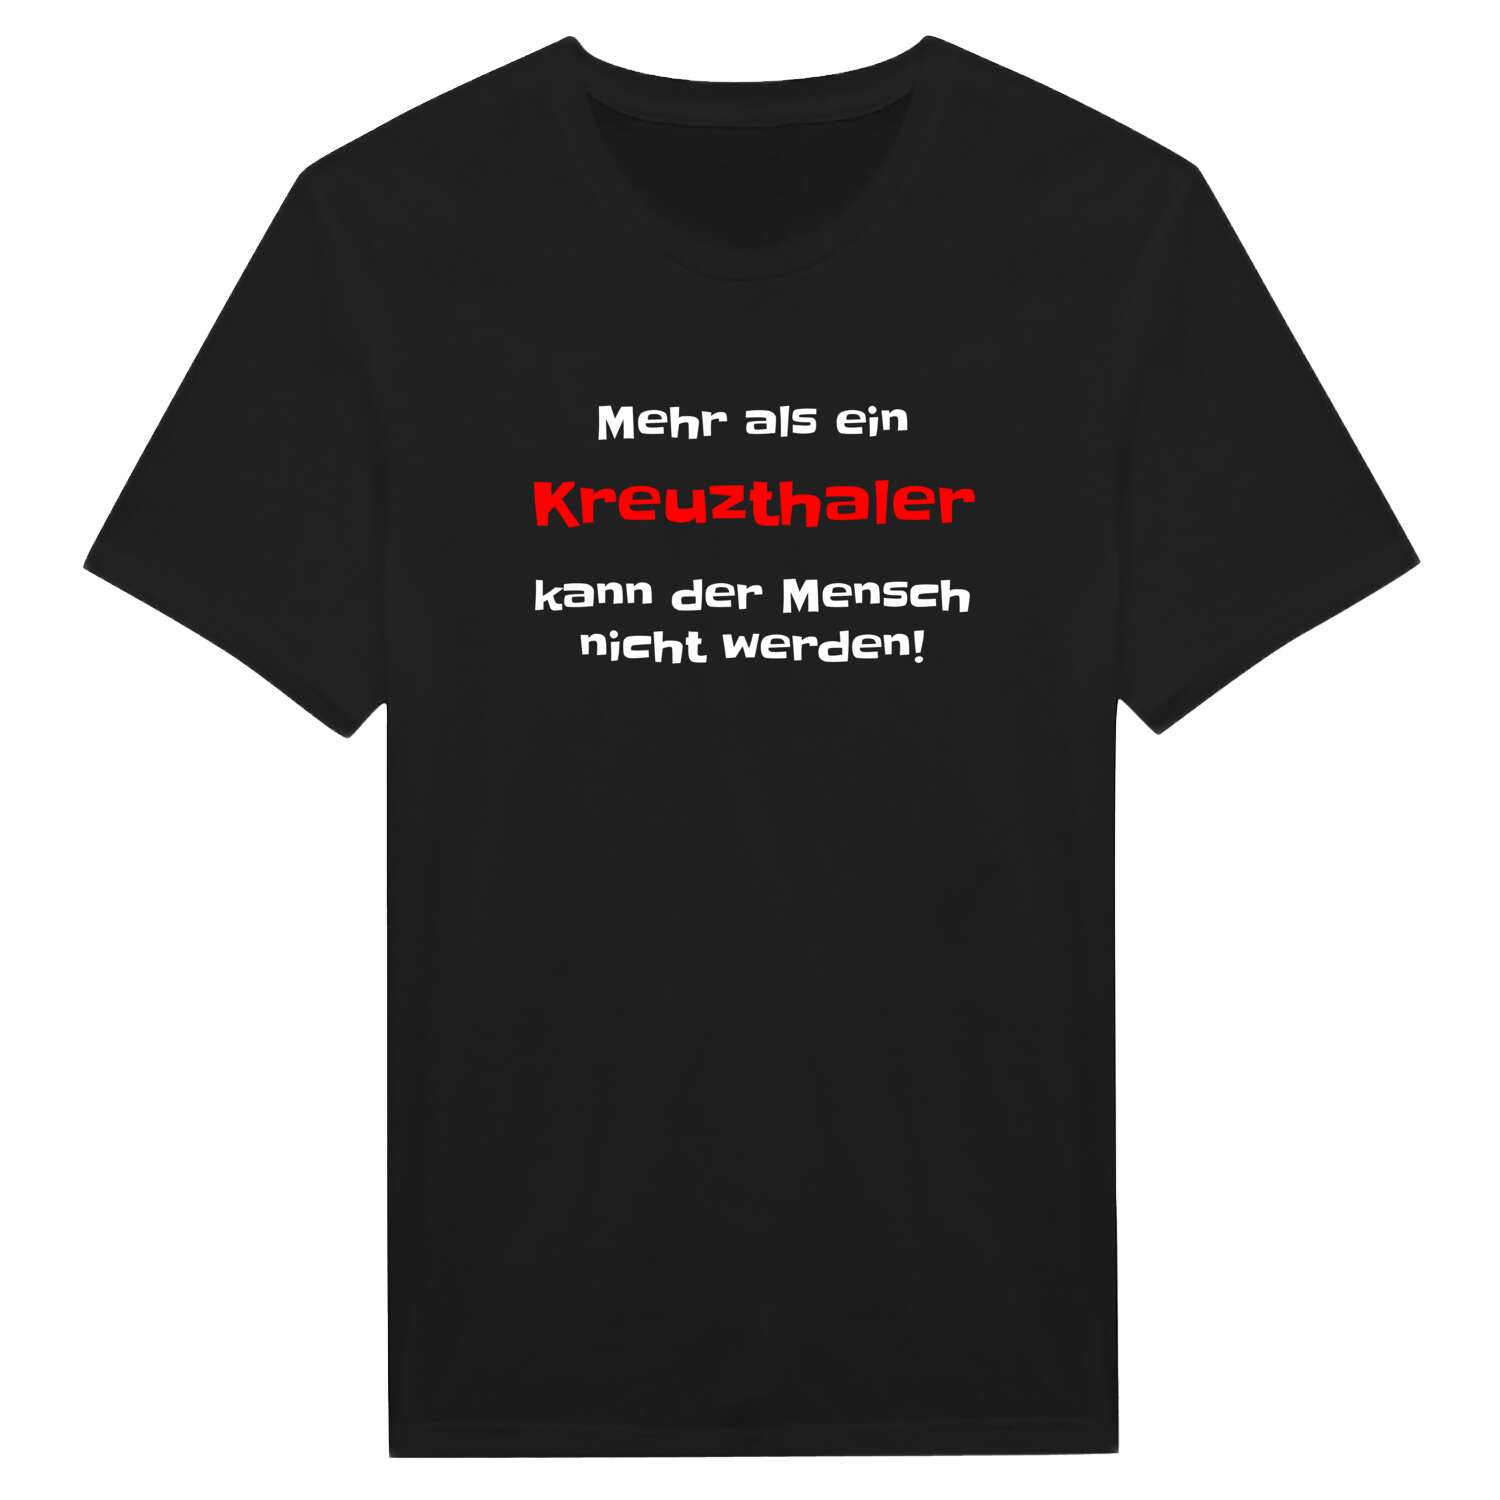 Kreuzthal T-Shirt »Mehr als ein«